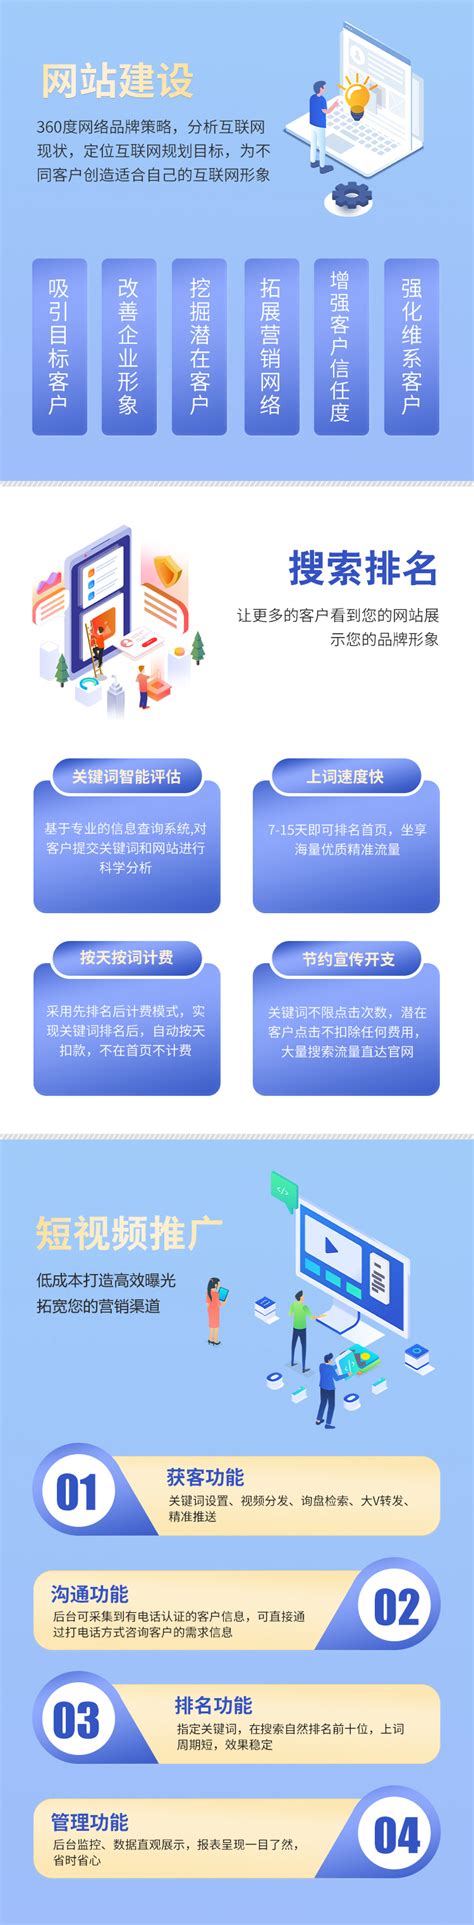 重庆网站建设和推广怎样